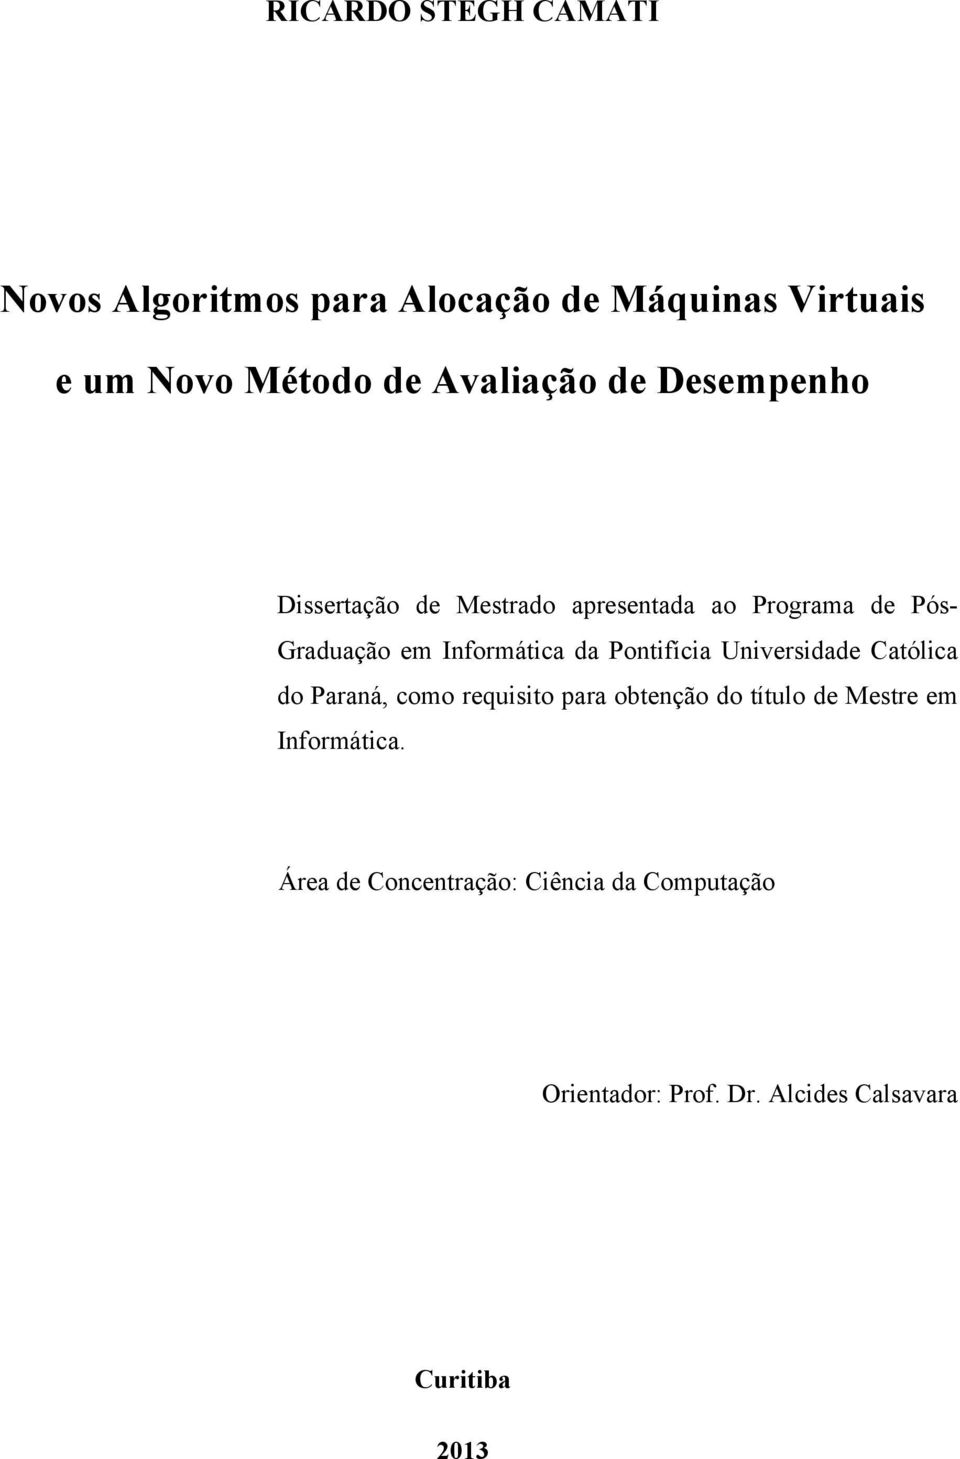 Informática da Pontifícia Universidade Católica do Paraná, como requisito para obtenção do título de